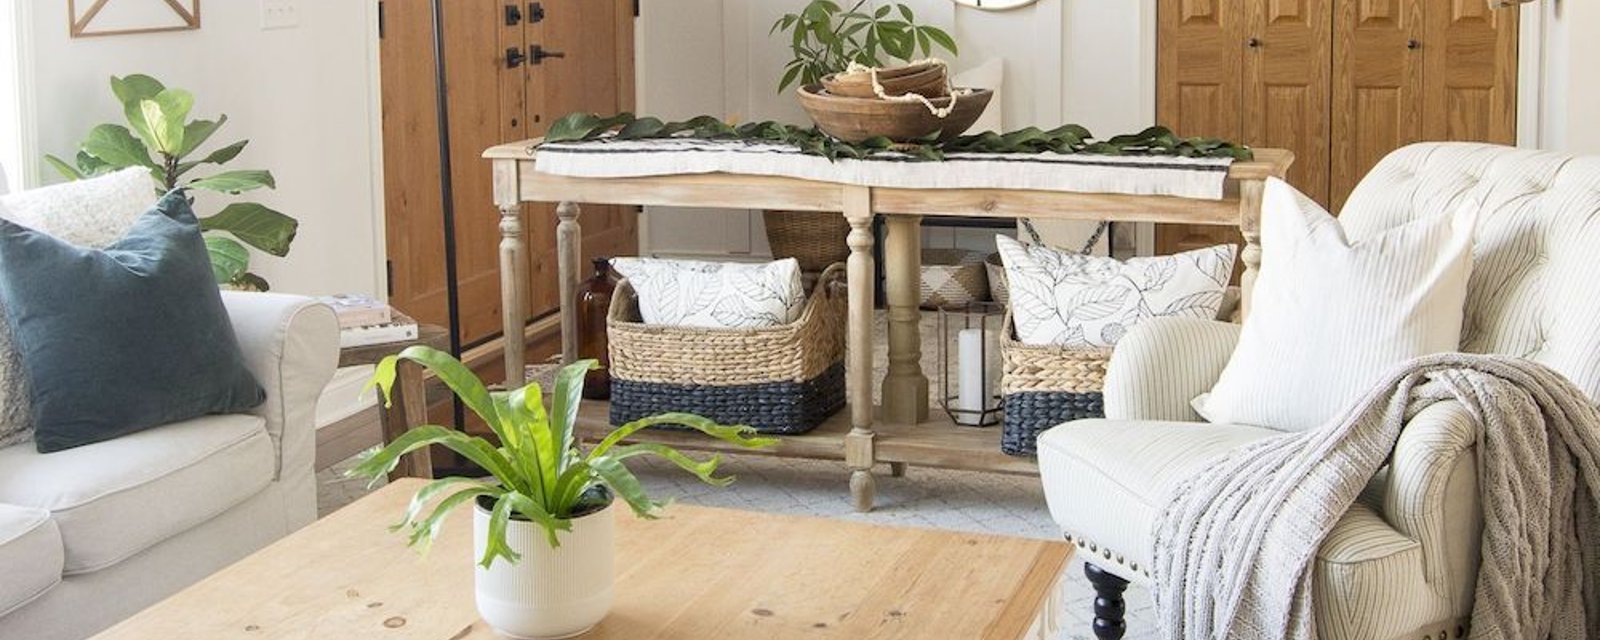 7 meubles typiques à retrouver dans un décor de style farmhouse